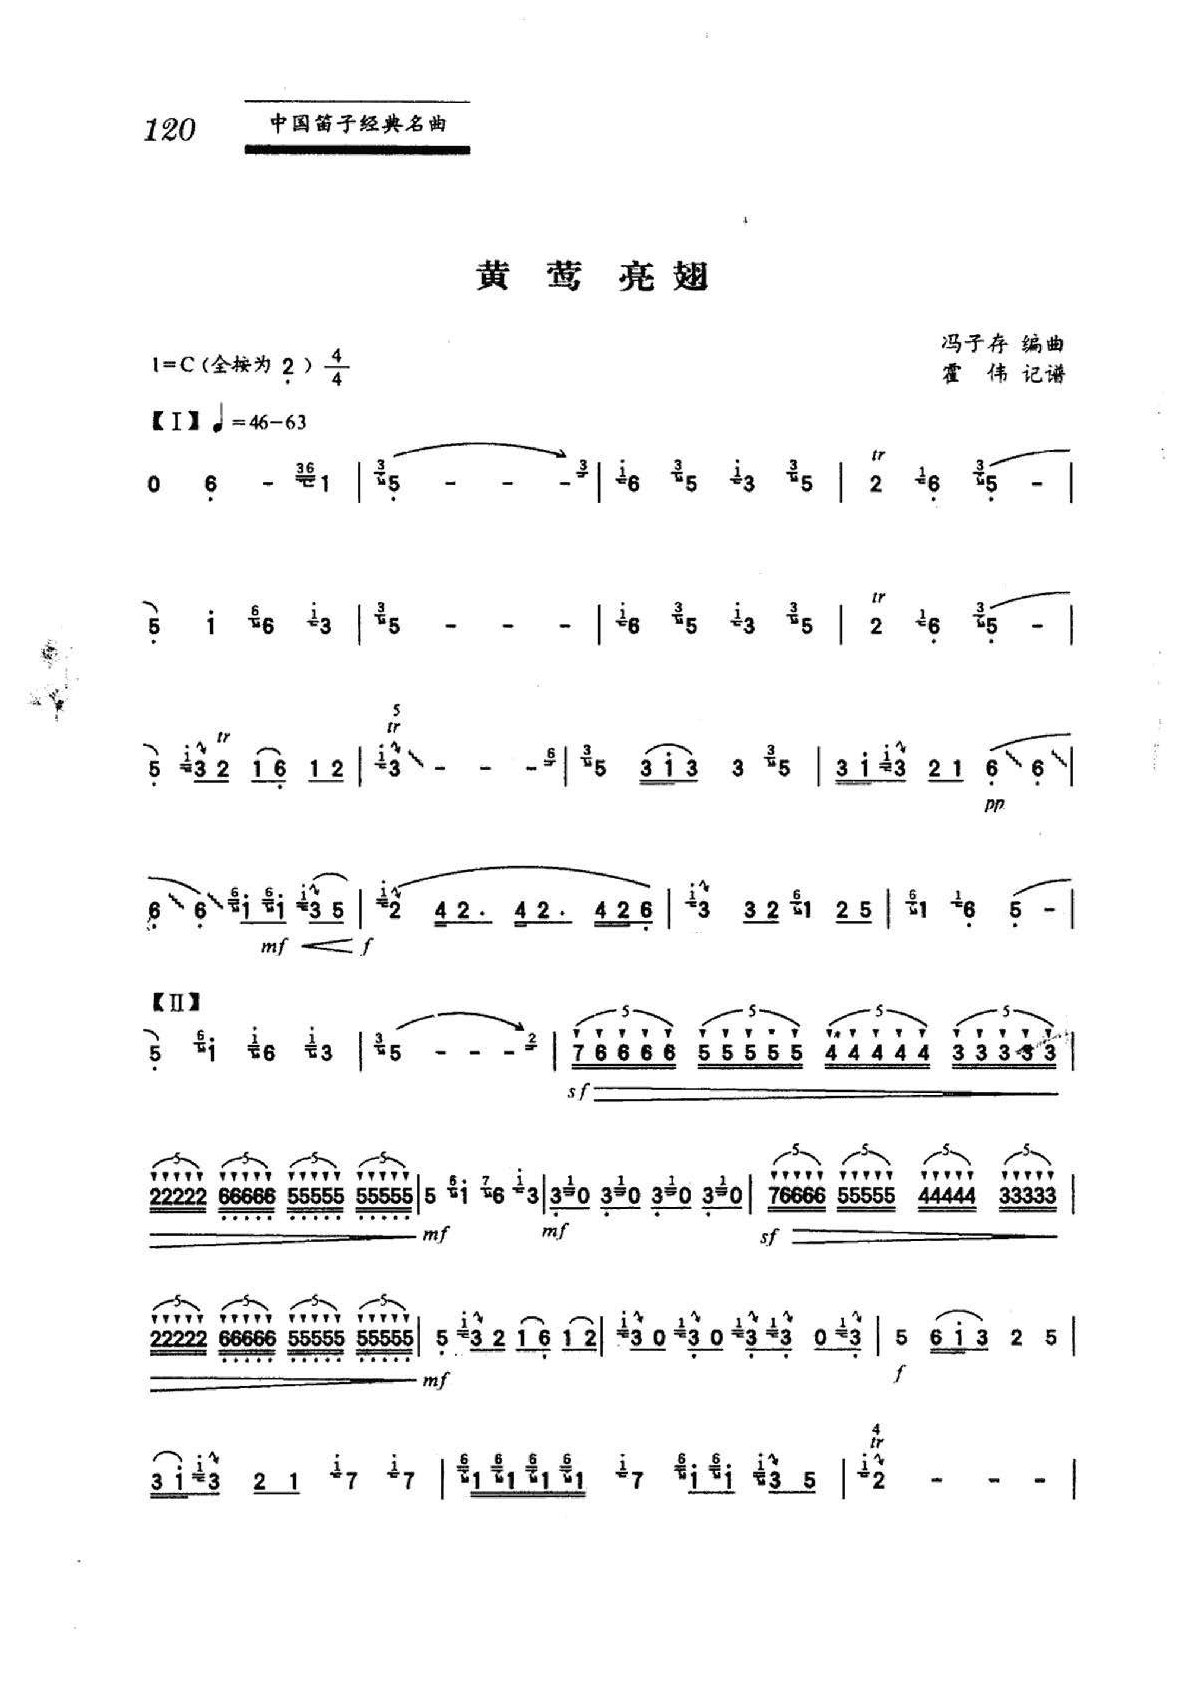 中国笛子名曲《黄莺亮翅》冯子存编曲、霍伟记谱